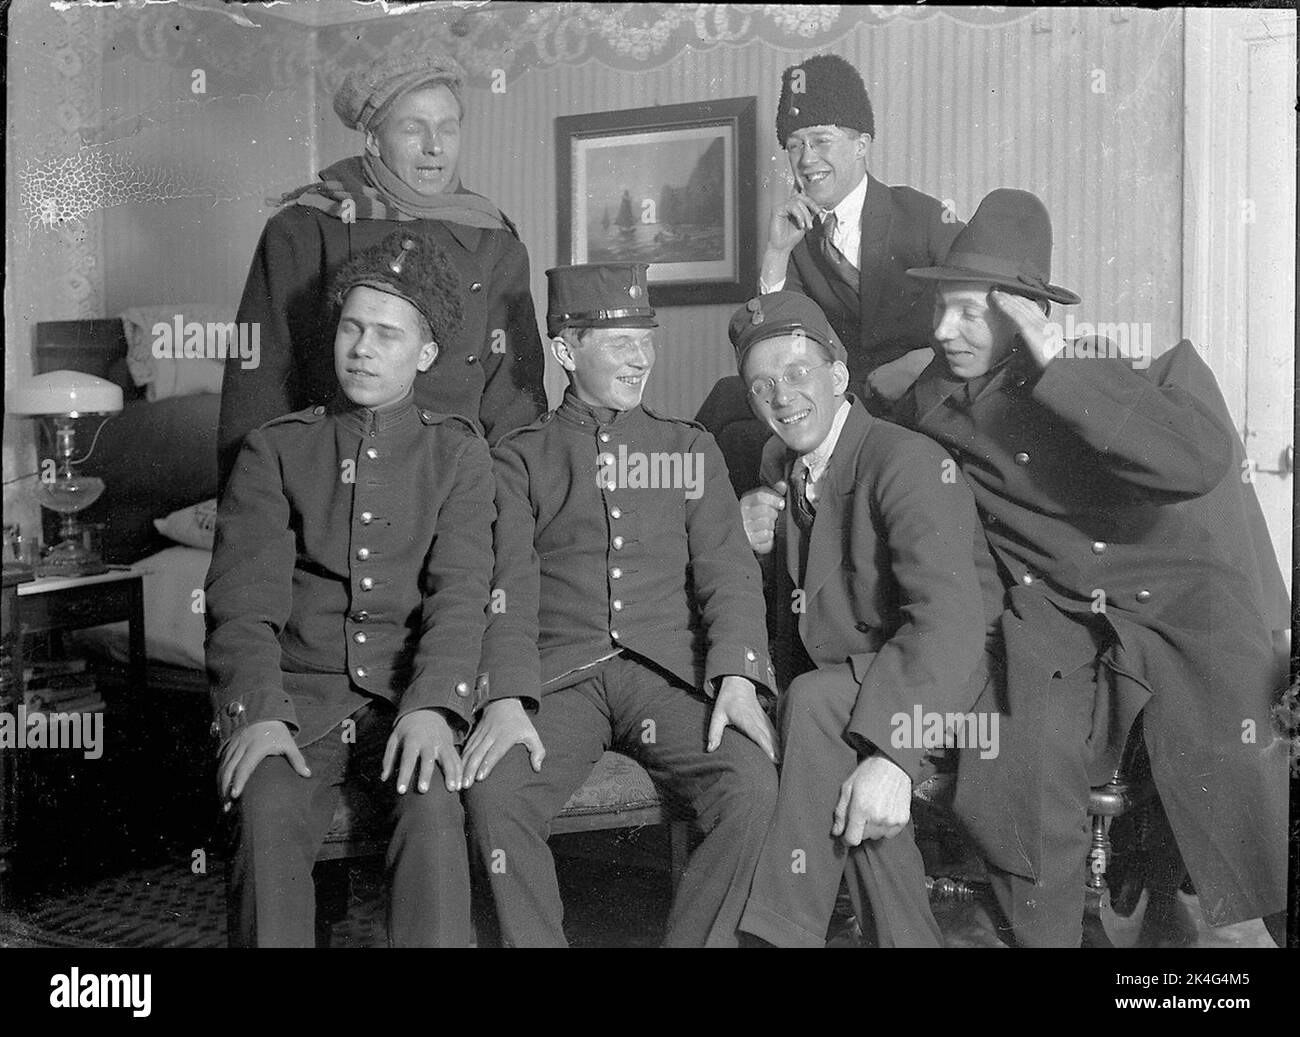 Gruppenbild von jungen Männern, die in Militärrechnungen gekleidet sind, möglicherweise maskiert. Lima, Dalarna Nordic Stockfoto